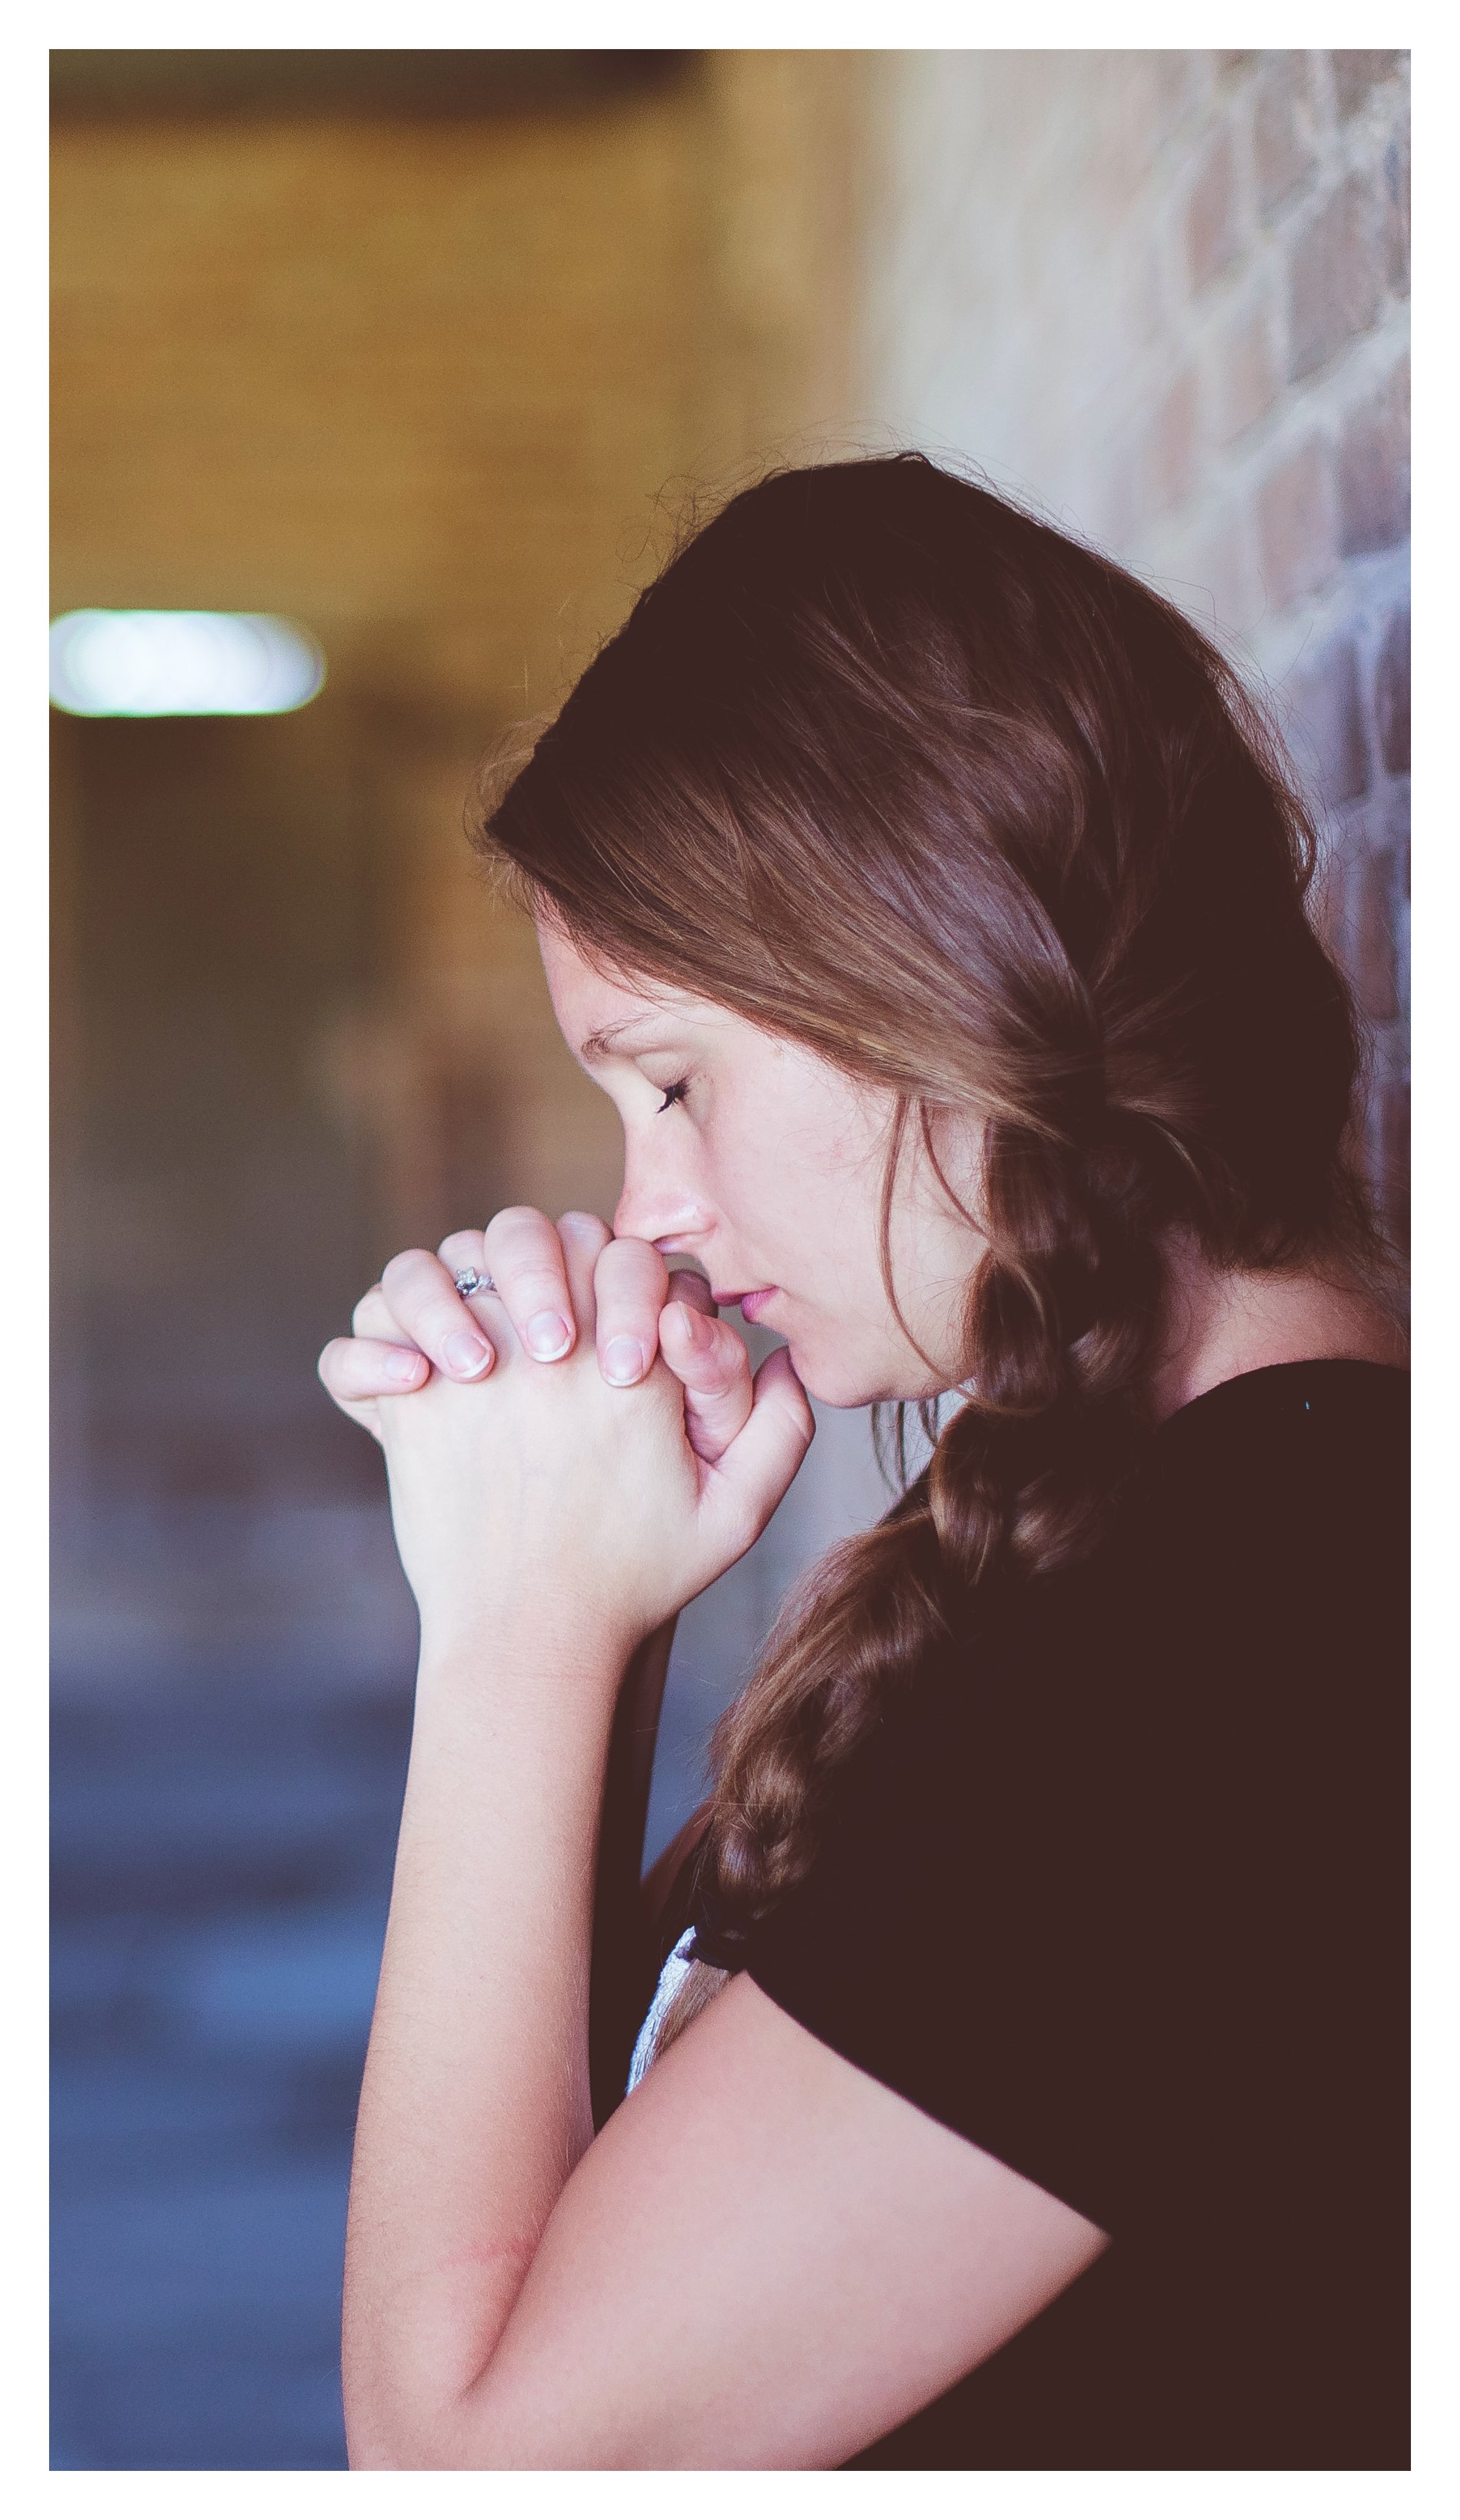 Female praying